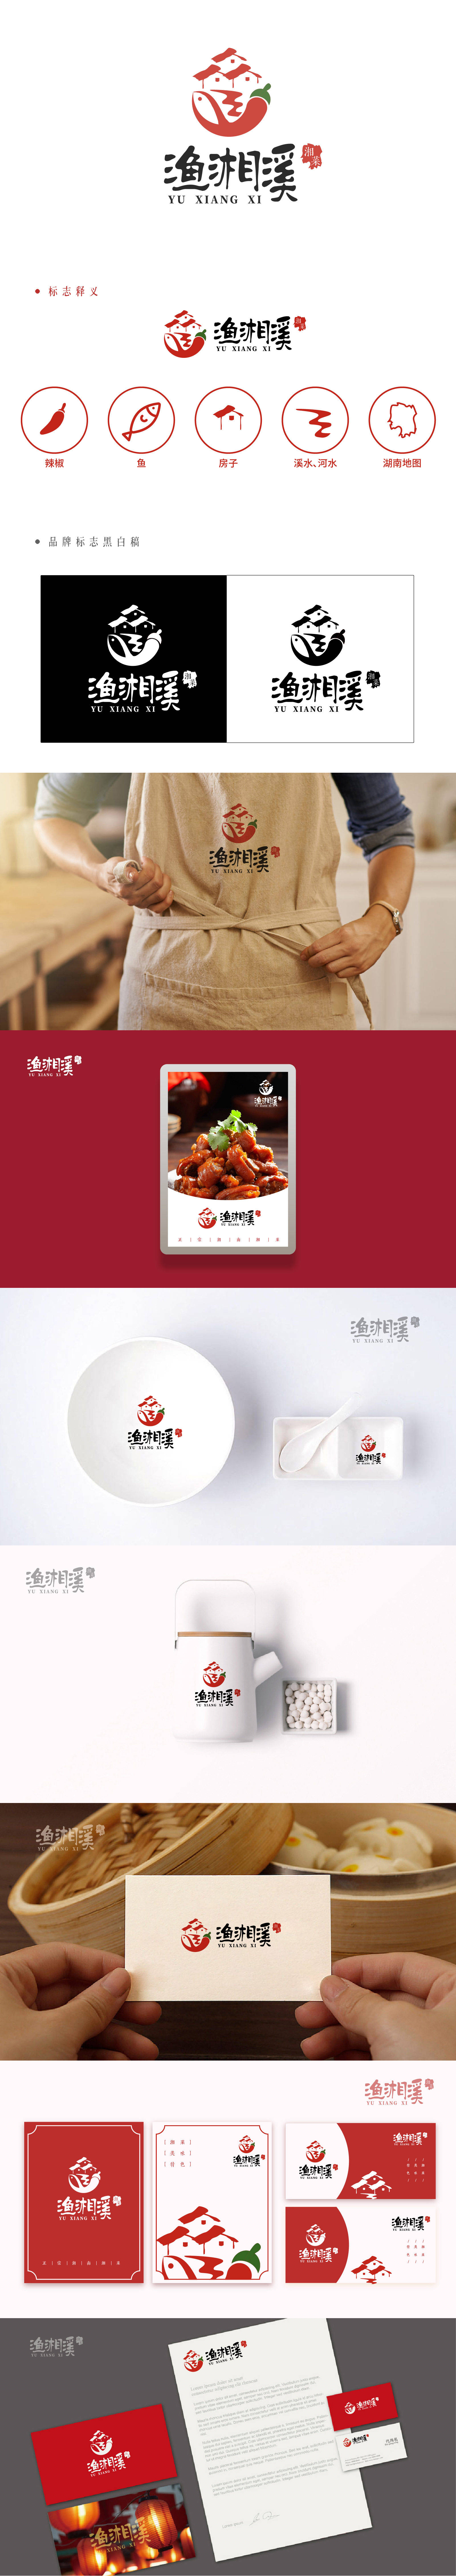 渔湘溪餐饮品牌LOGO设计-第1张